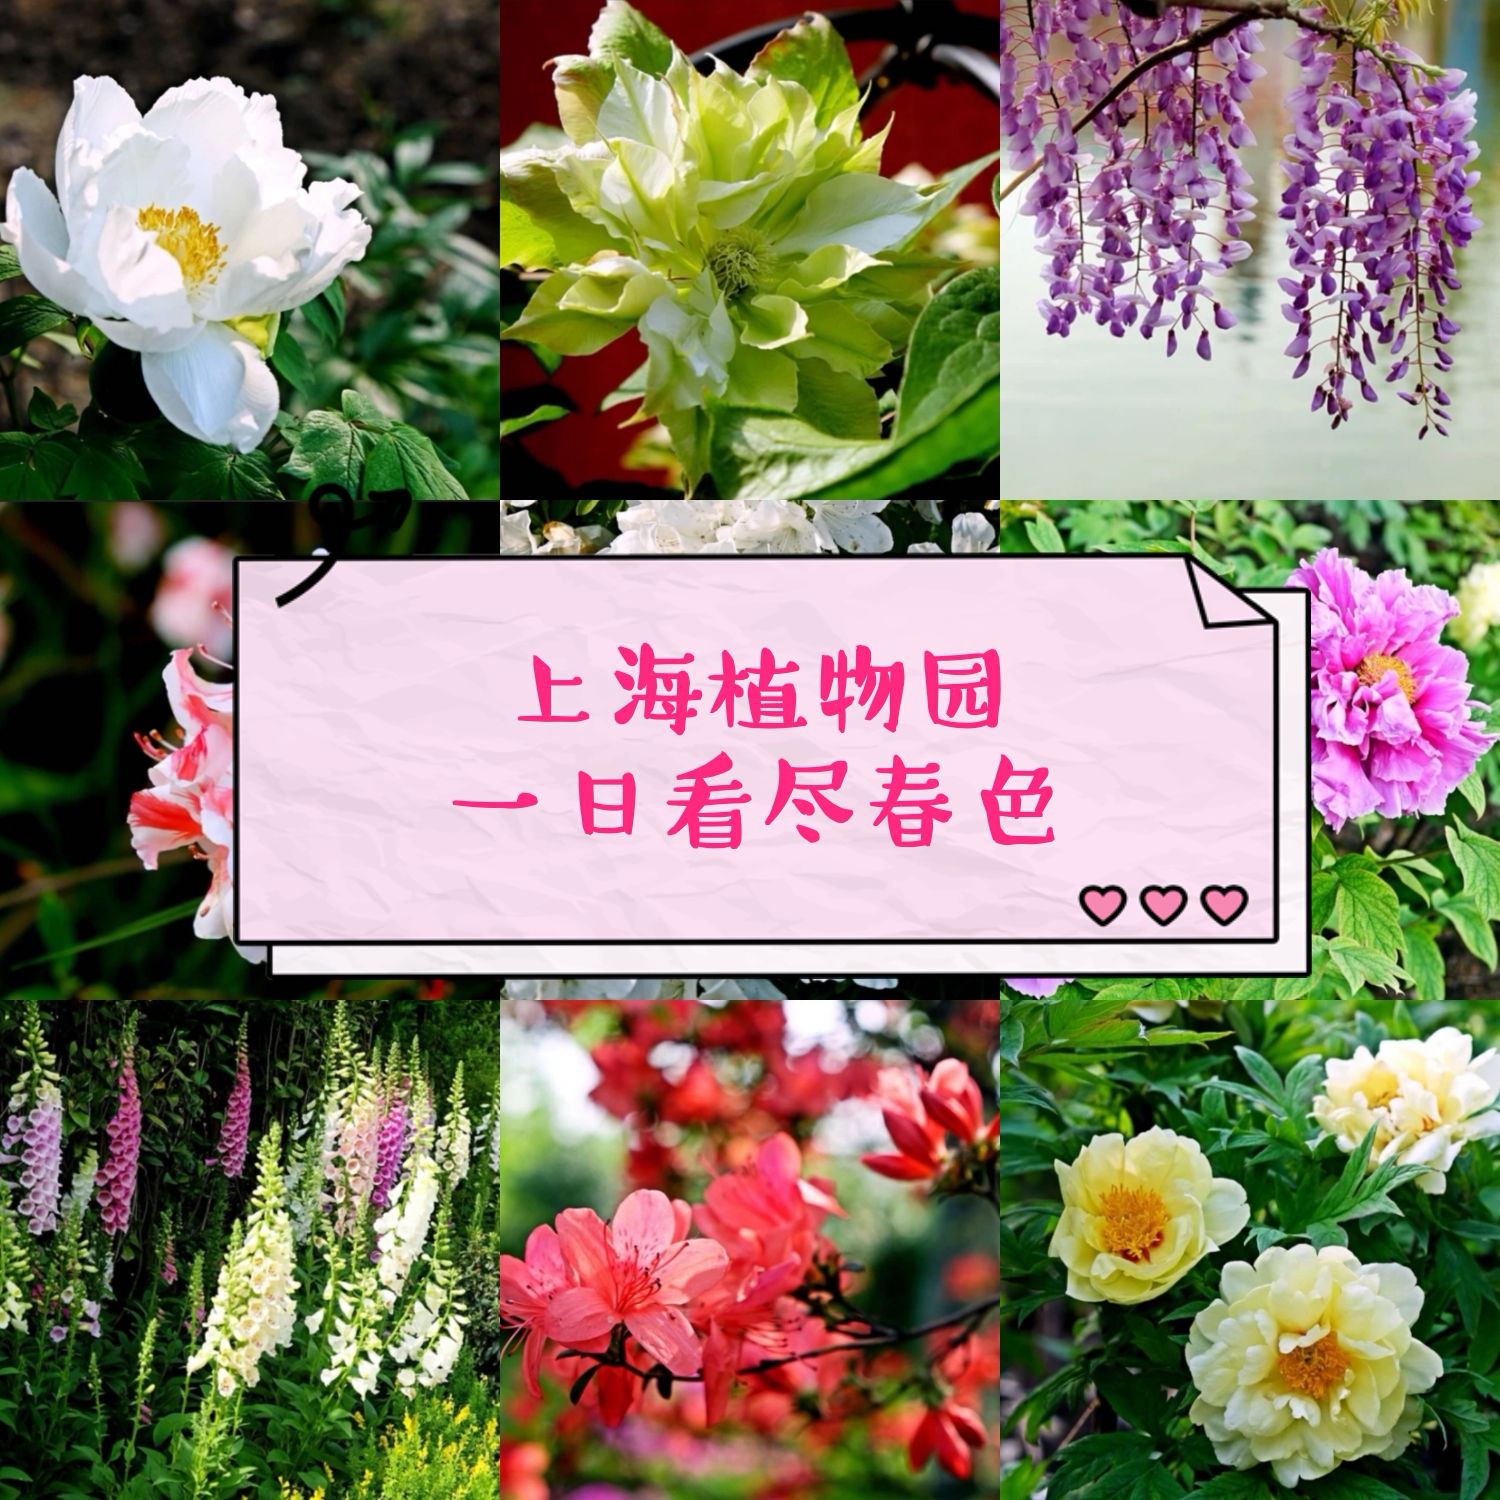 春天，找一个赏花的妙处！ 一年四季赏花，都不能漏掉上海植物园。 四月中旬，来得晚了一些，樱花和桃花固